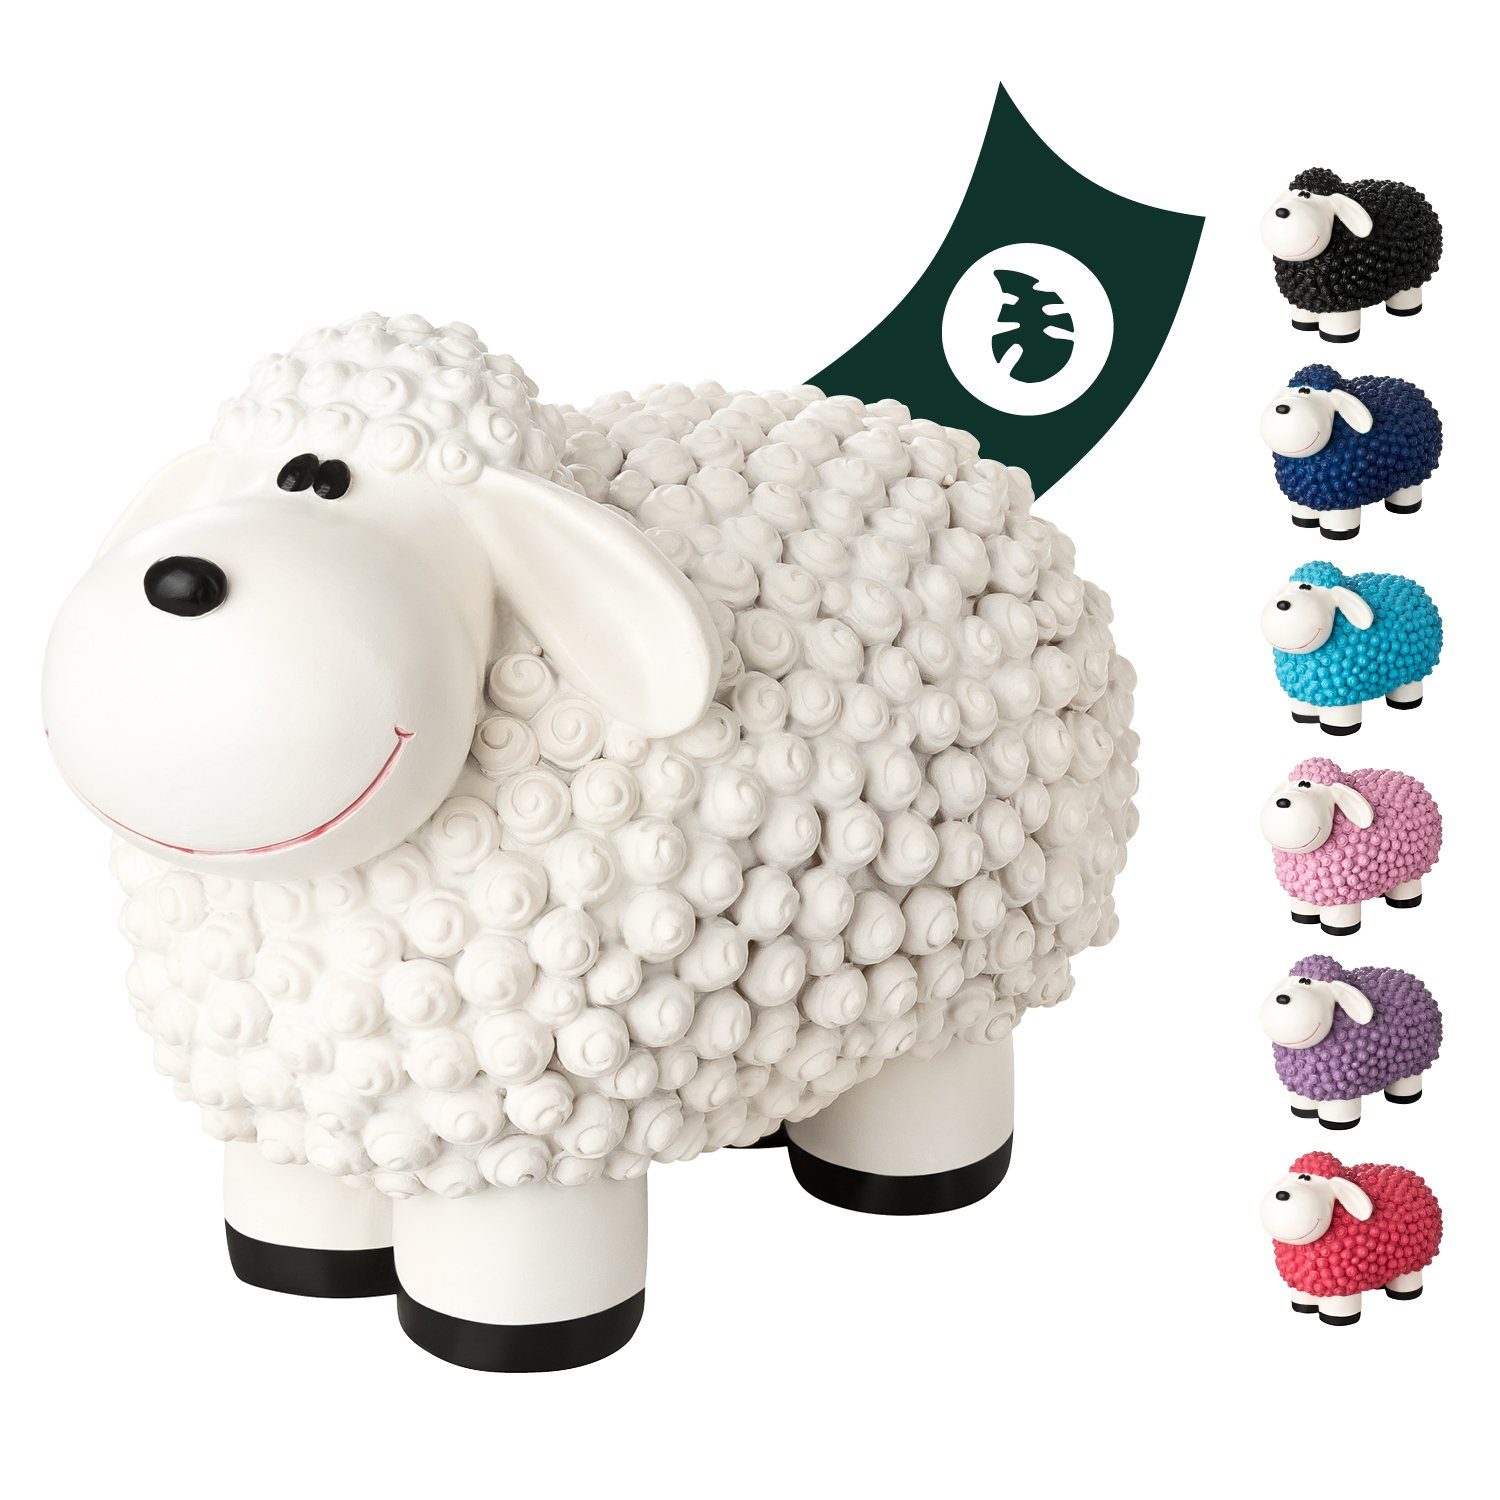 VERDOBA Gartenfigur Gartendeko Mini Schaf - Wetterfeste Gartenfigur - Deko Schaf für Außen, Polyresin Weiß